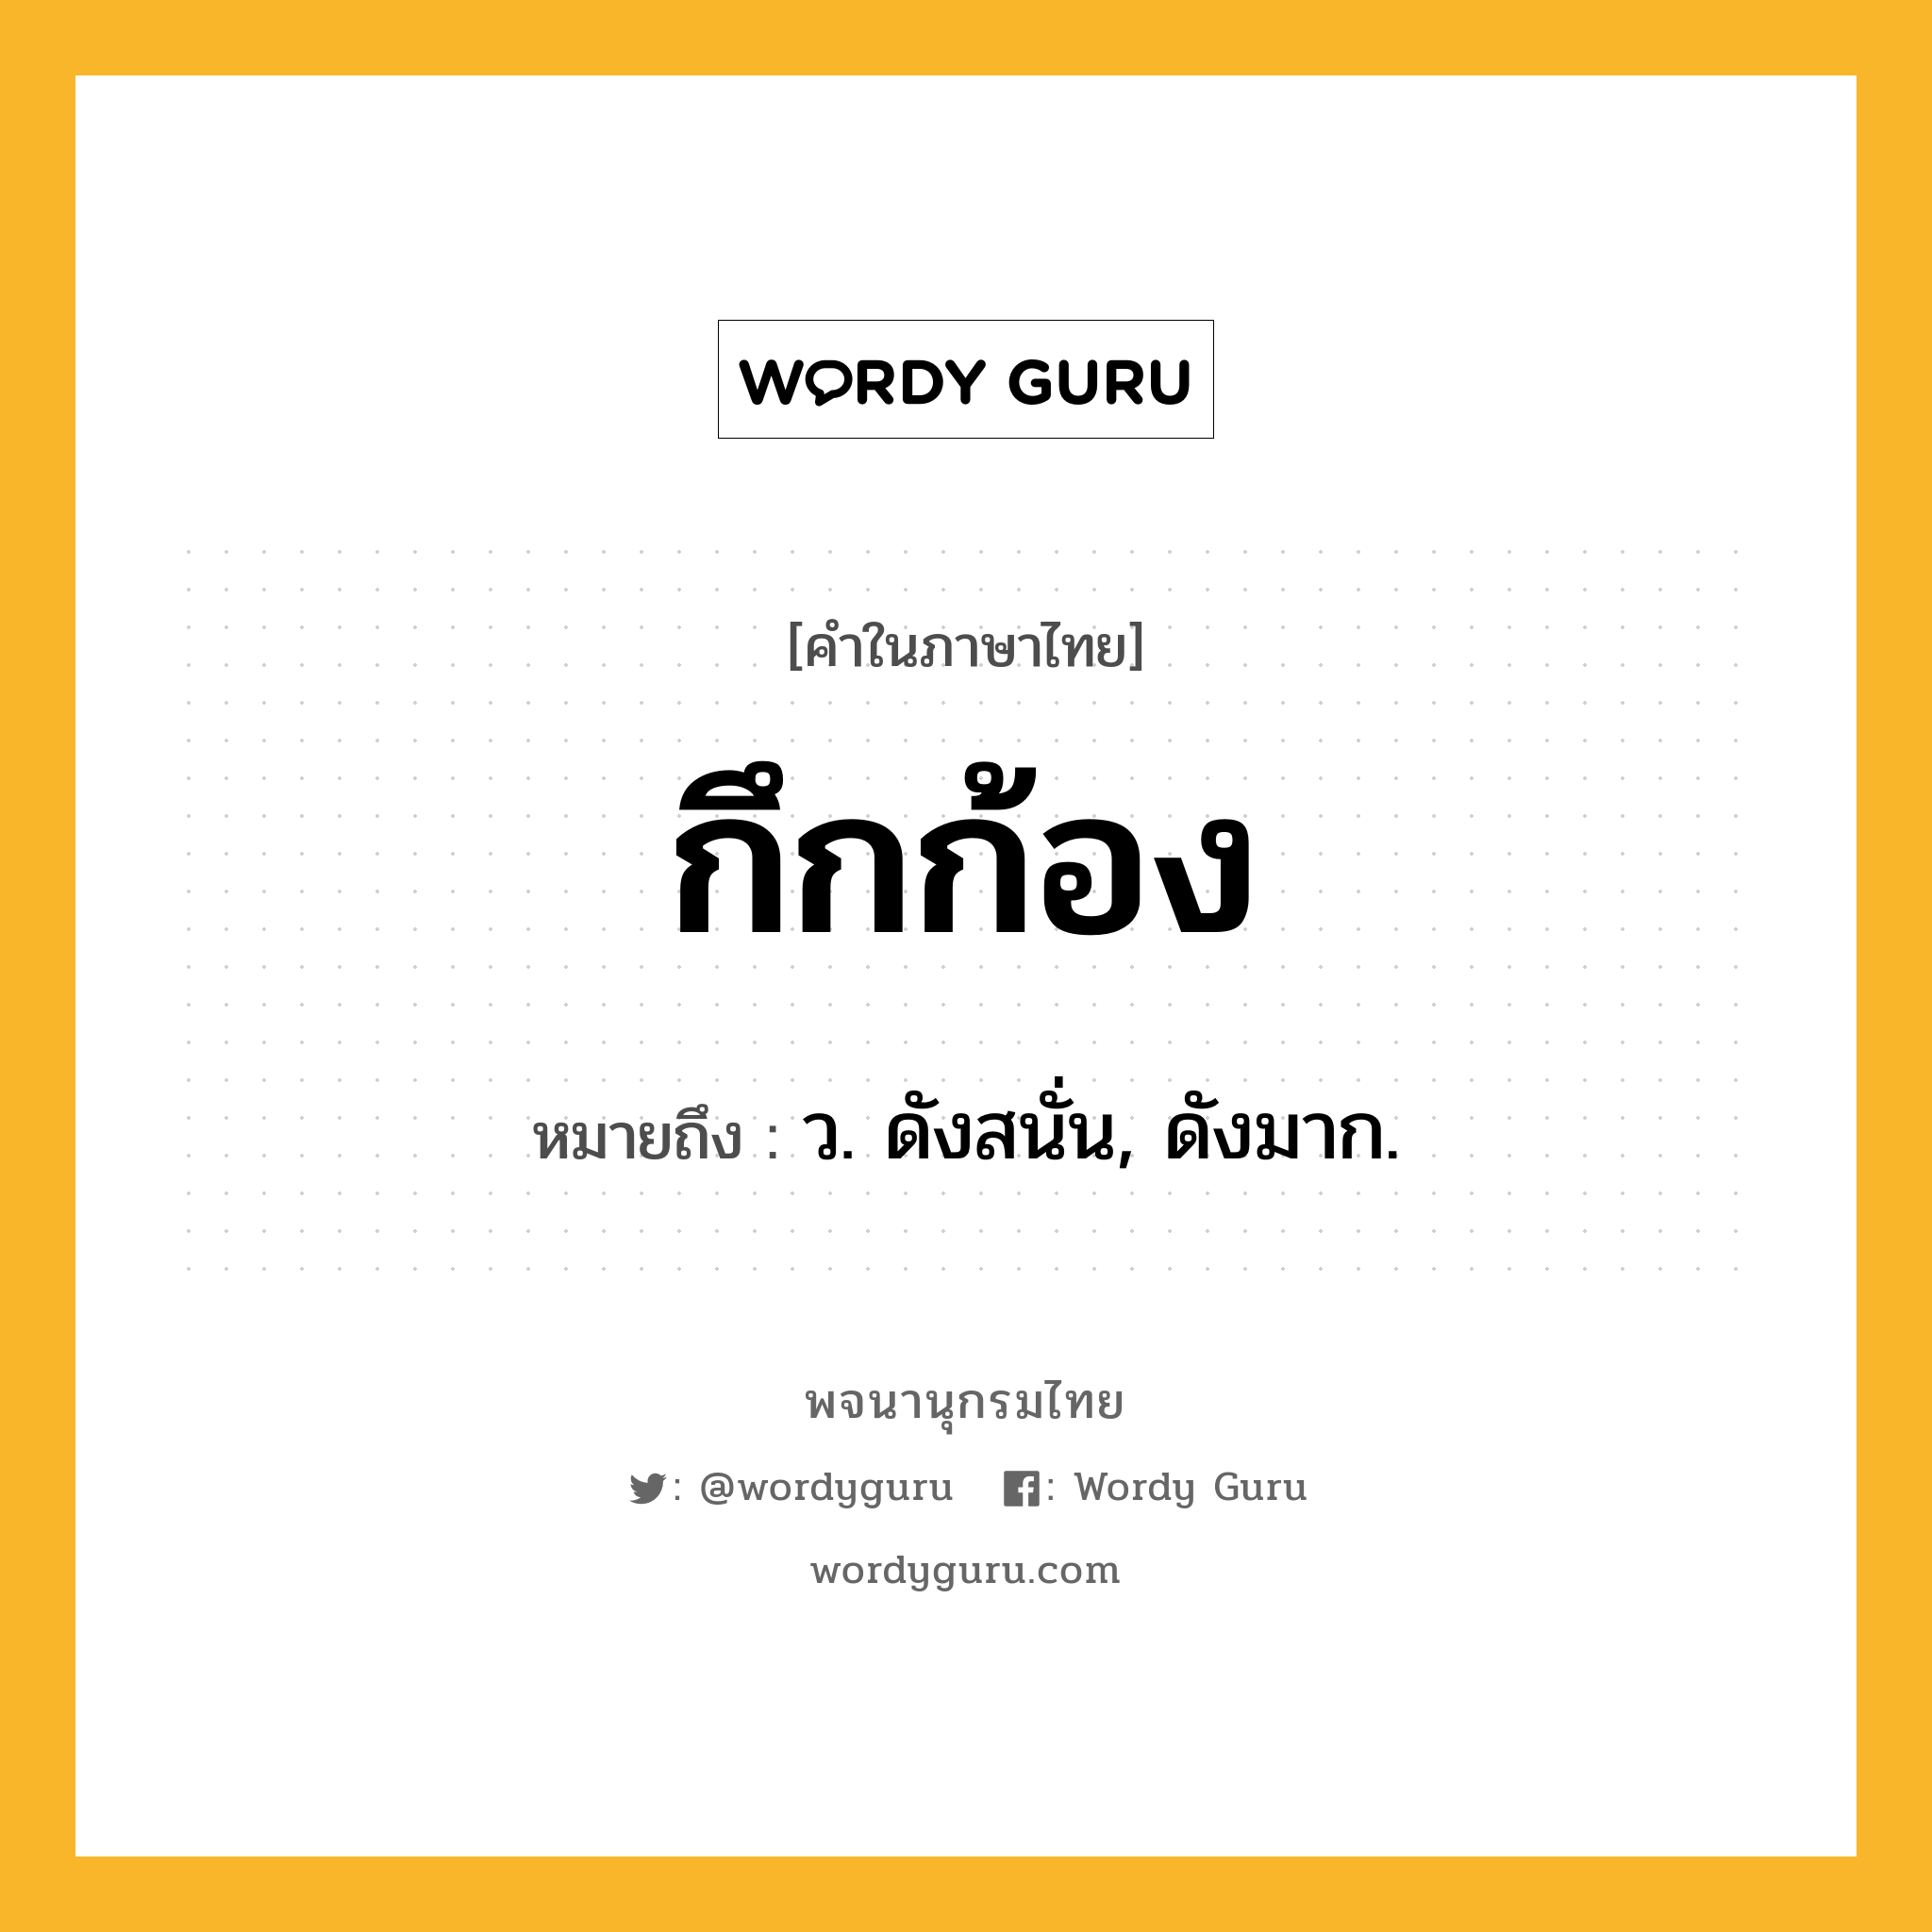 กึกก้อง หมายถึงอะไร?, คำในภาษาไทย กึกก้อง หมายถึง ว. ดังสนั่น, ดังมาก.